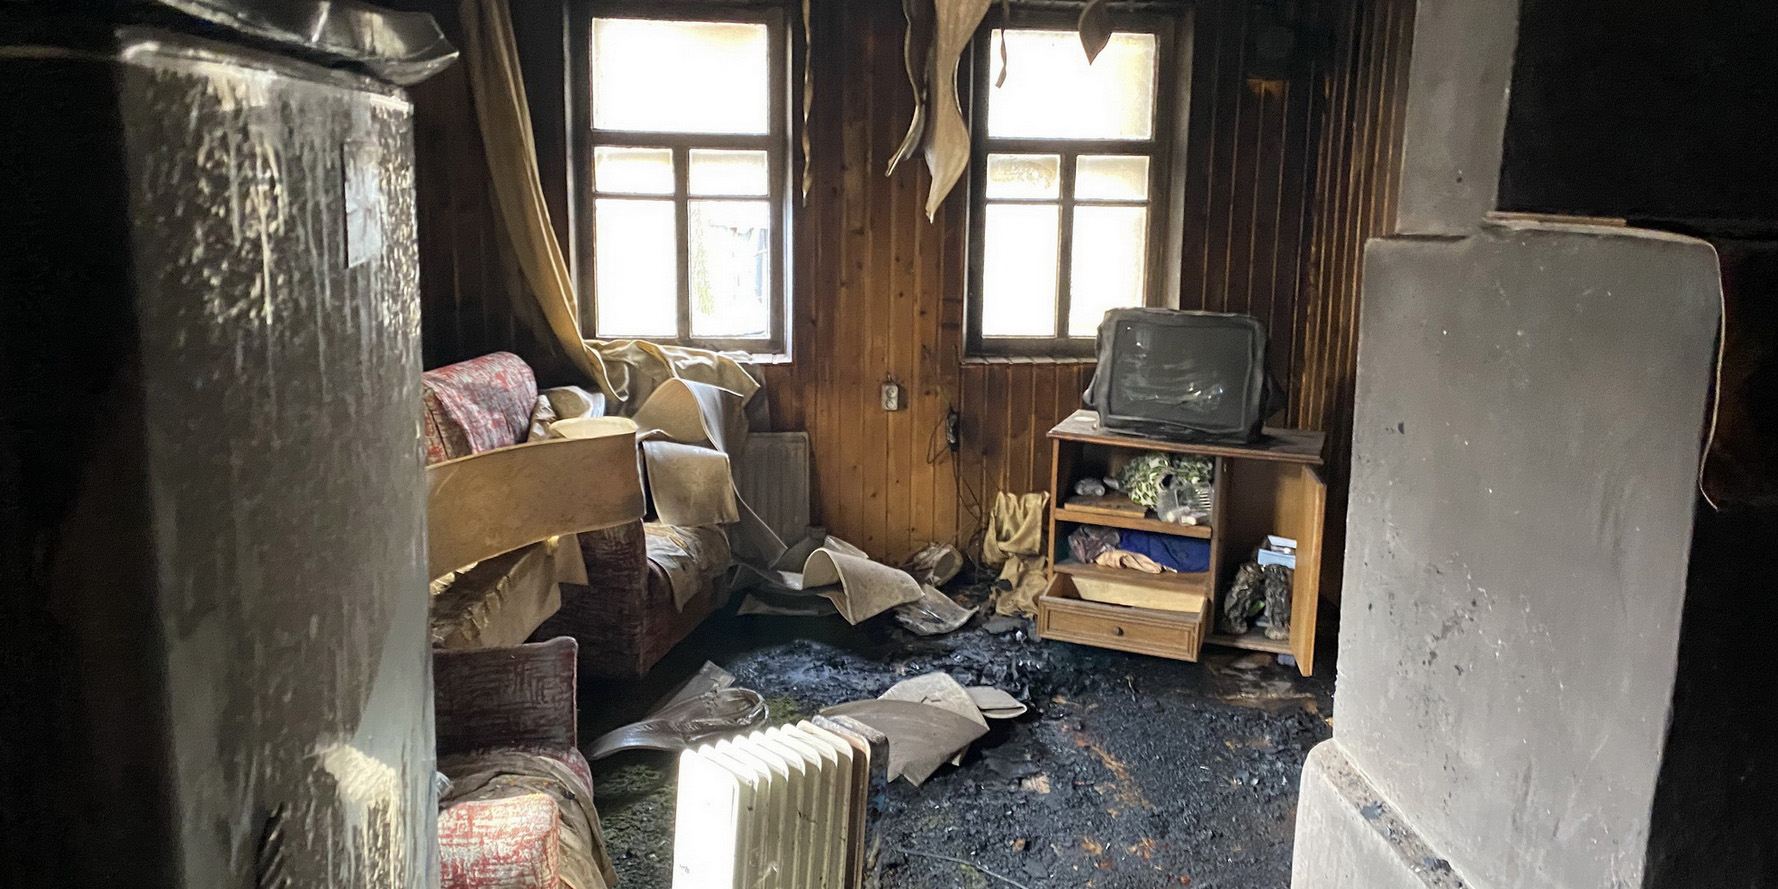 Оставленный без присмотра электрический обогреватель мог стать причиной пожара в доме на ул.Гагарина в Могилеве